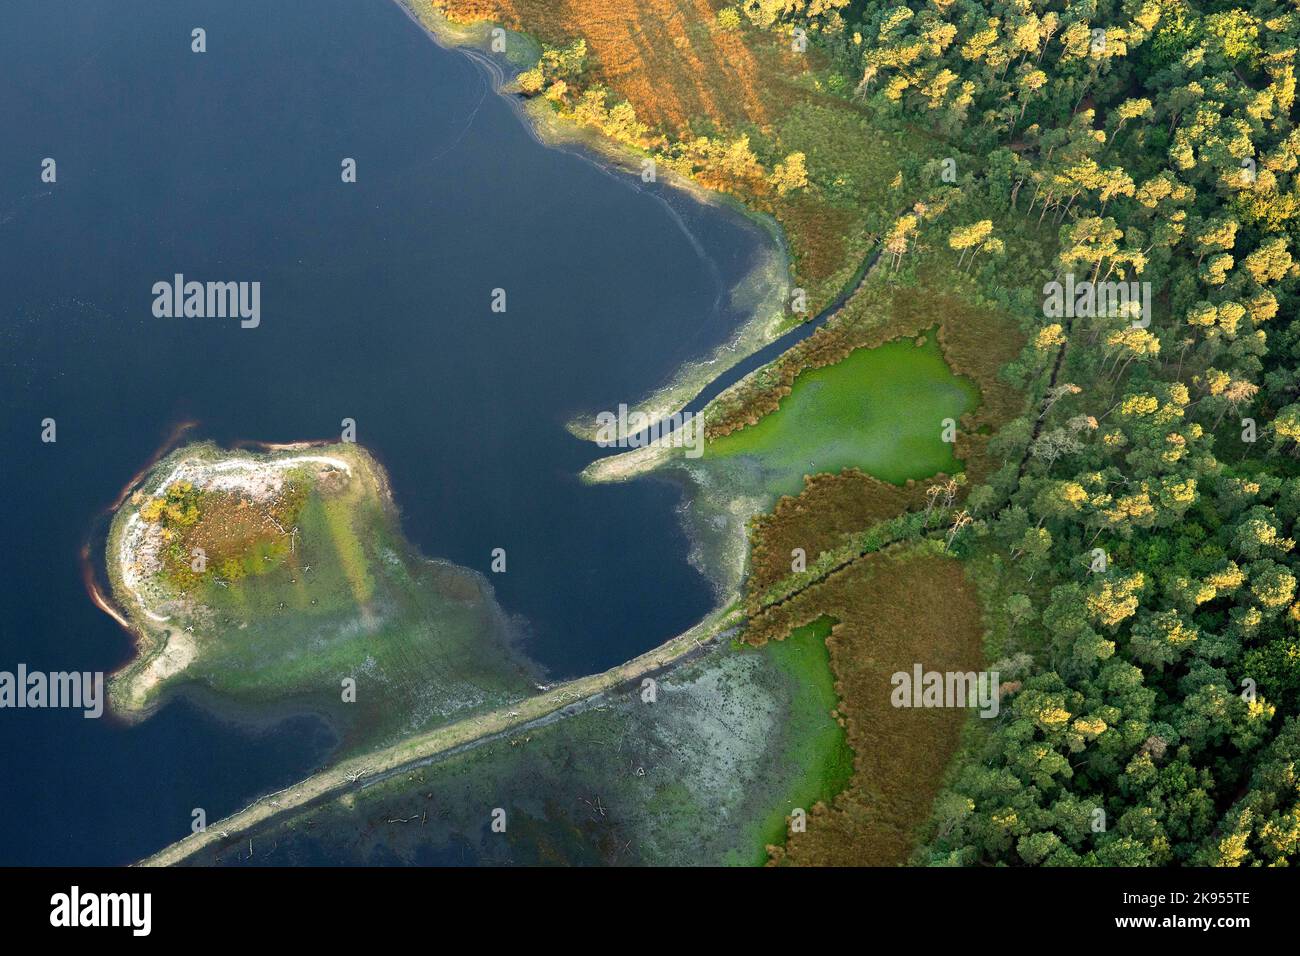 Vue aérienne de la réserve naturelle de Stappersven-Kalmthoutse Heide, Belgique, Anvers, Kalmthout, Kalmthoutse heide Banque D'Images